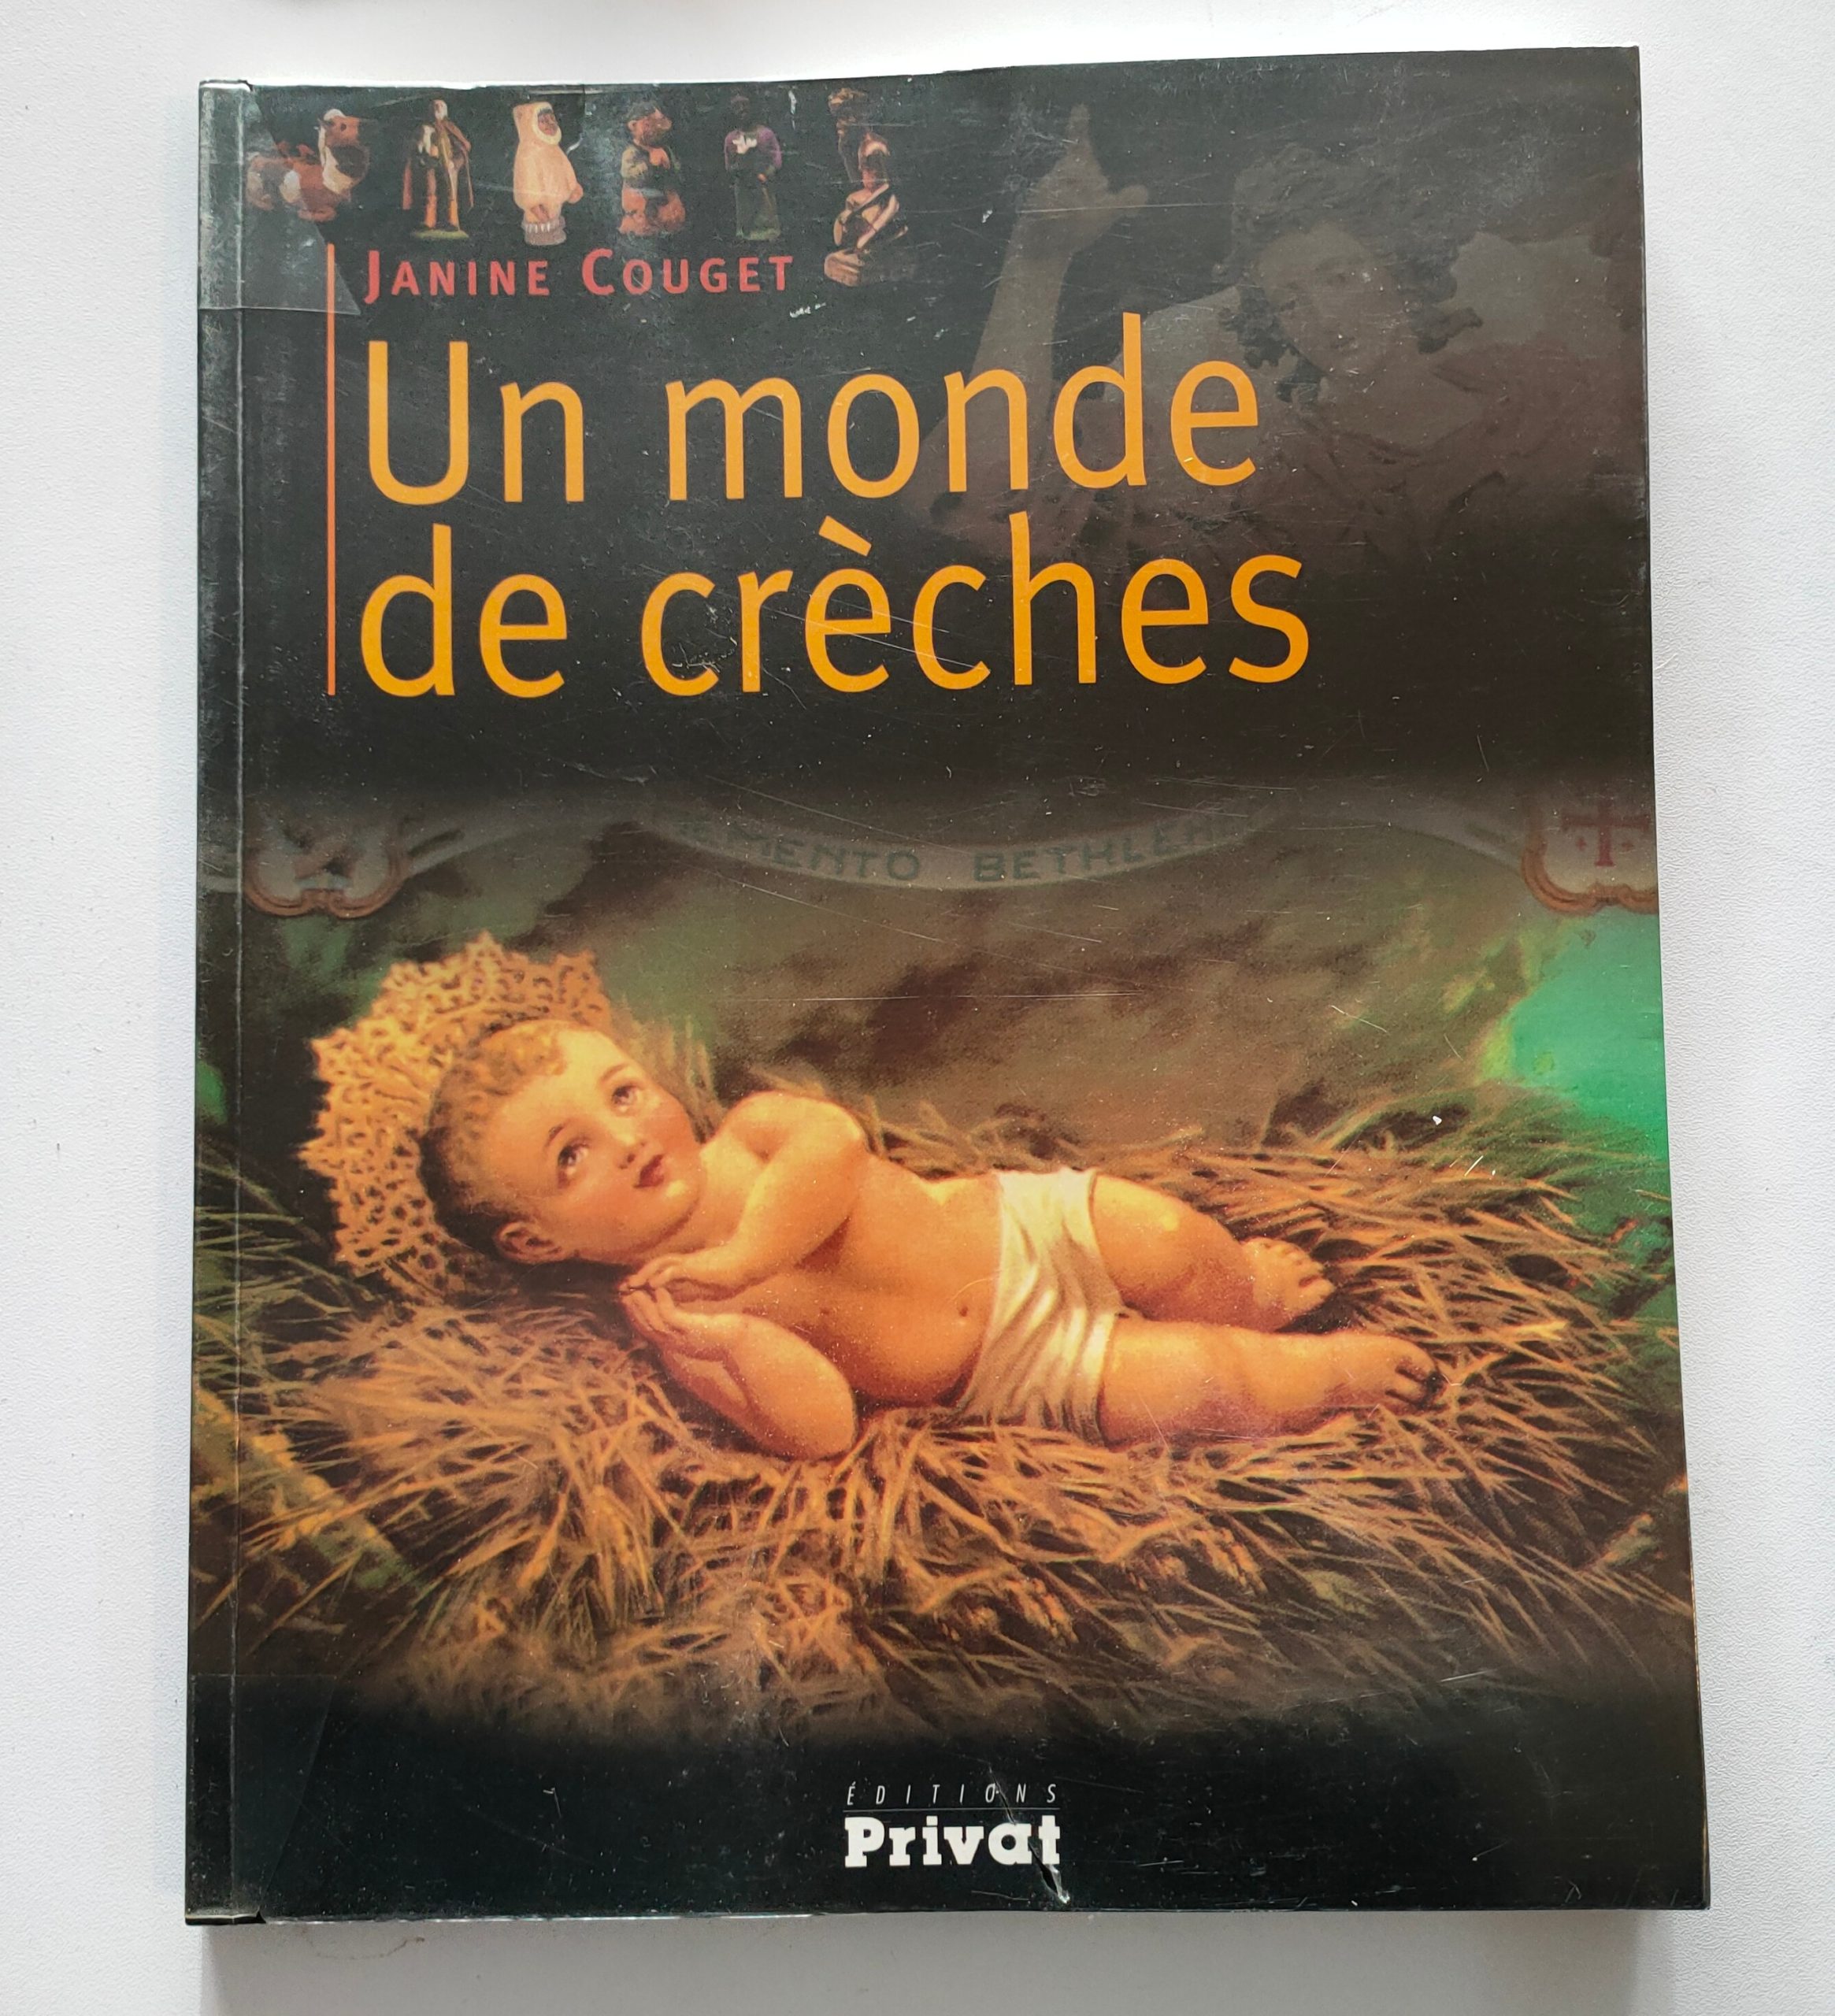 Featured image for “Un monde de crèches / Janine Couget / Privat éditions / 2004”